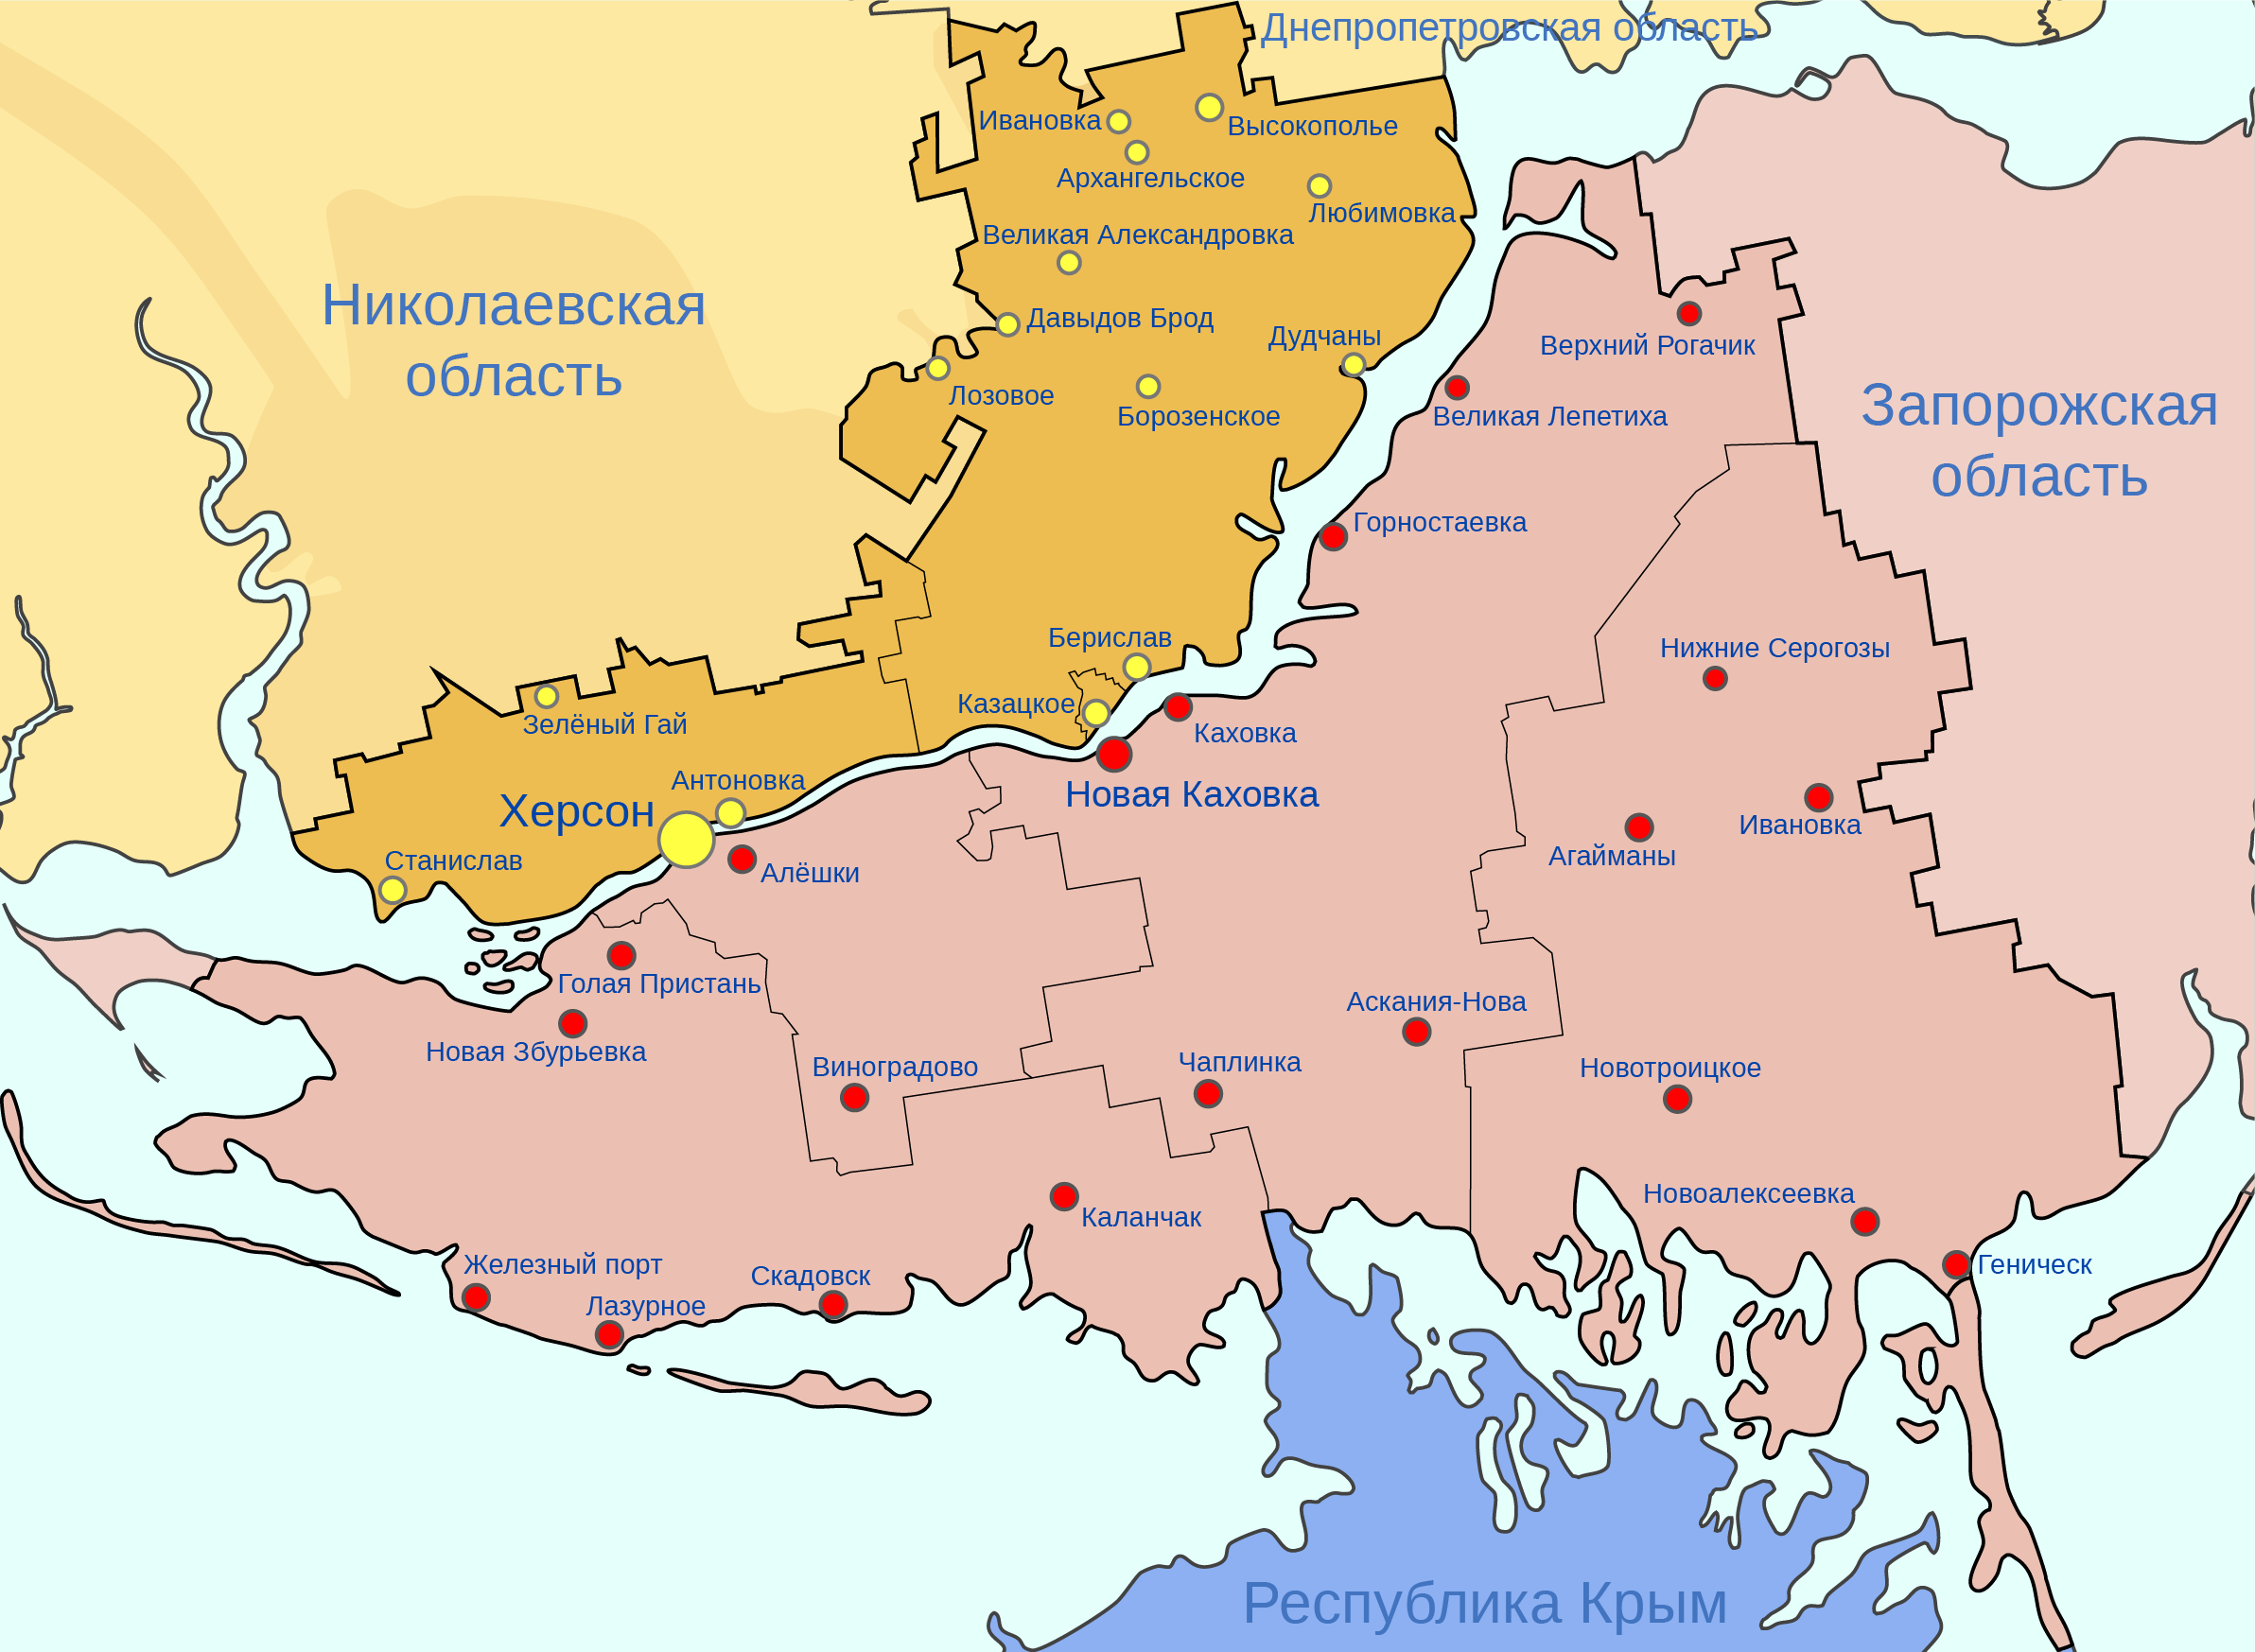 Почему херсонская область. Карта Херсонской обл. Херсонская область на карте. Херсонская область на карте Украины. Административная карта Херсонской области.